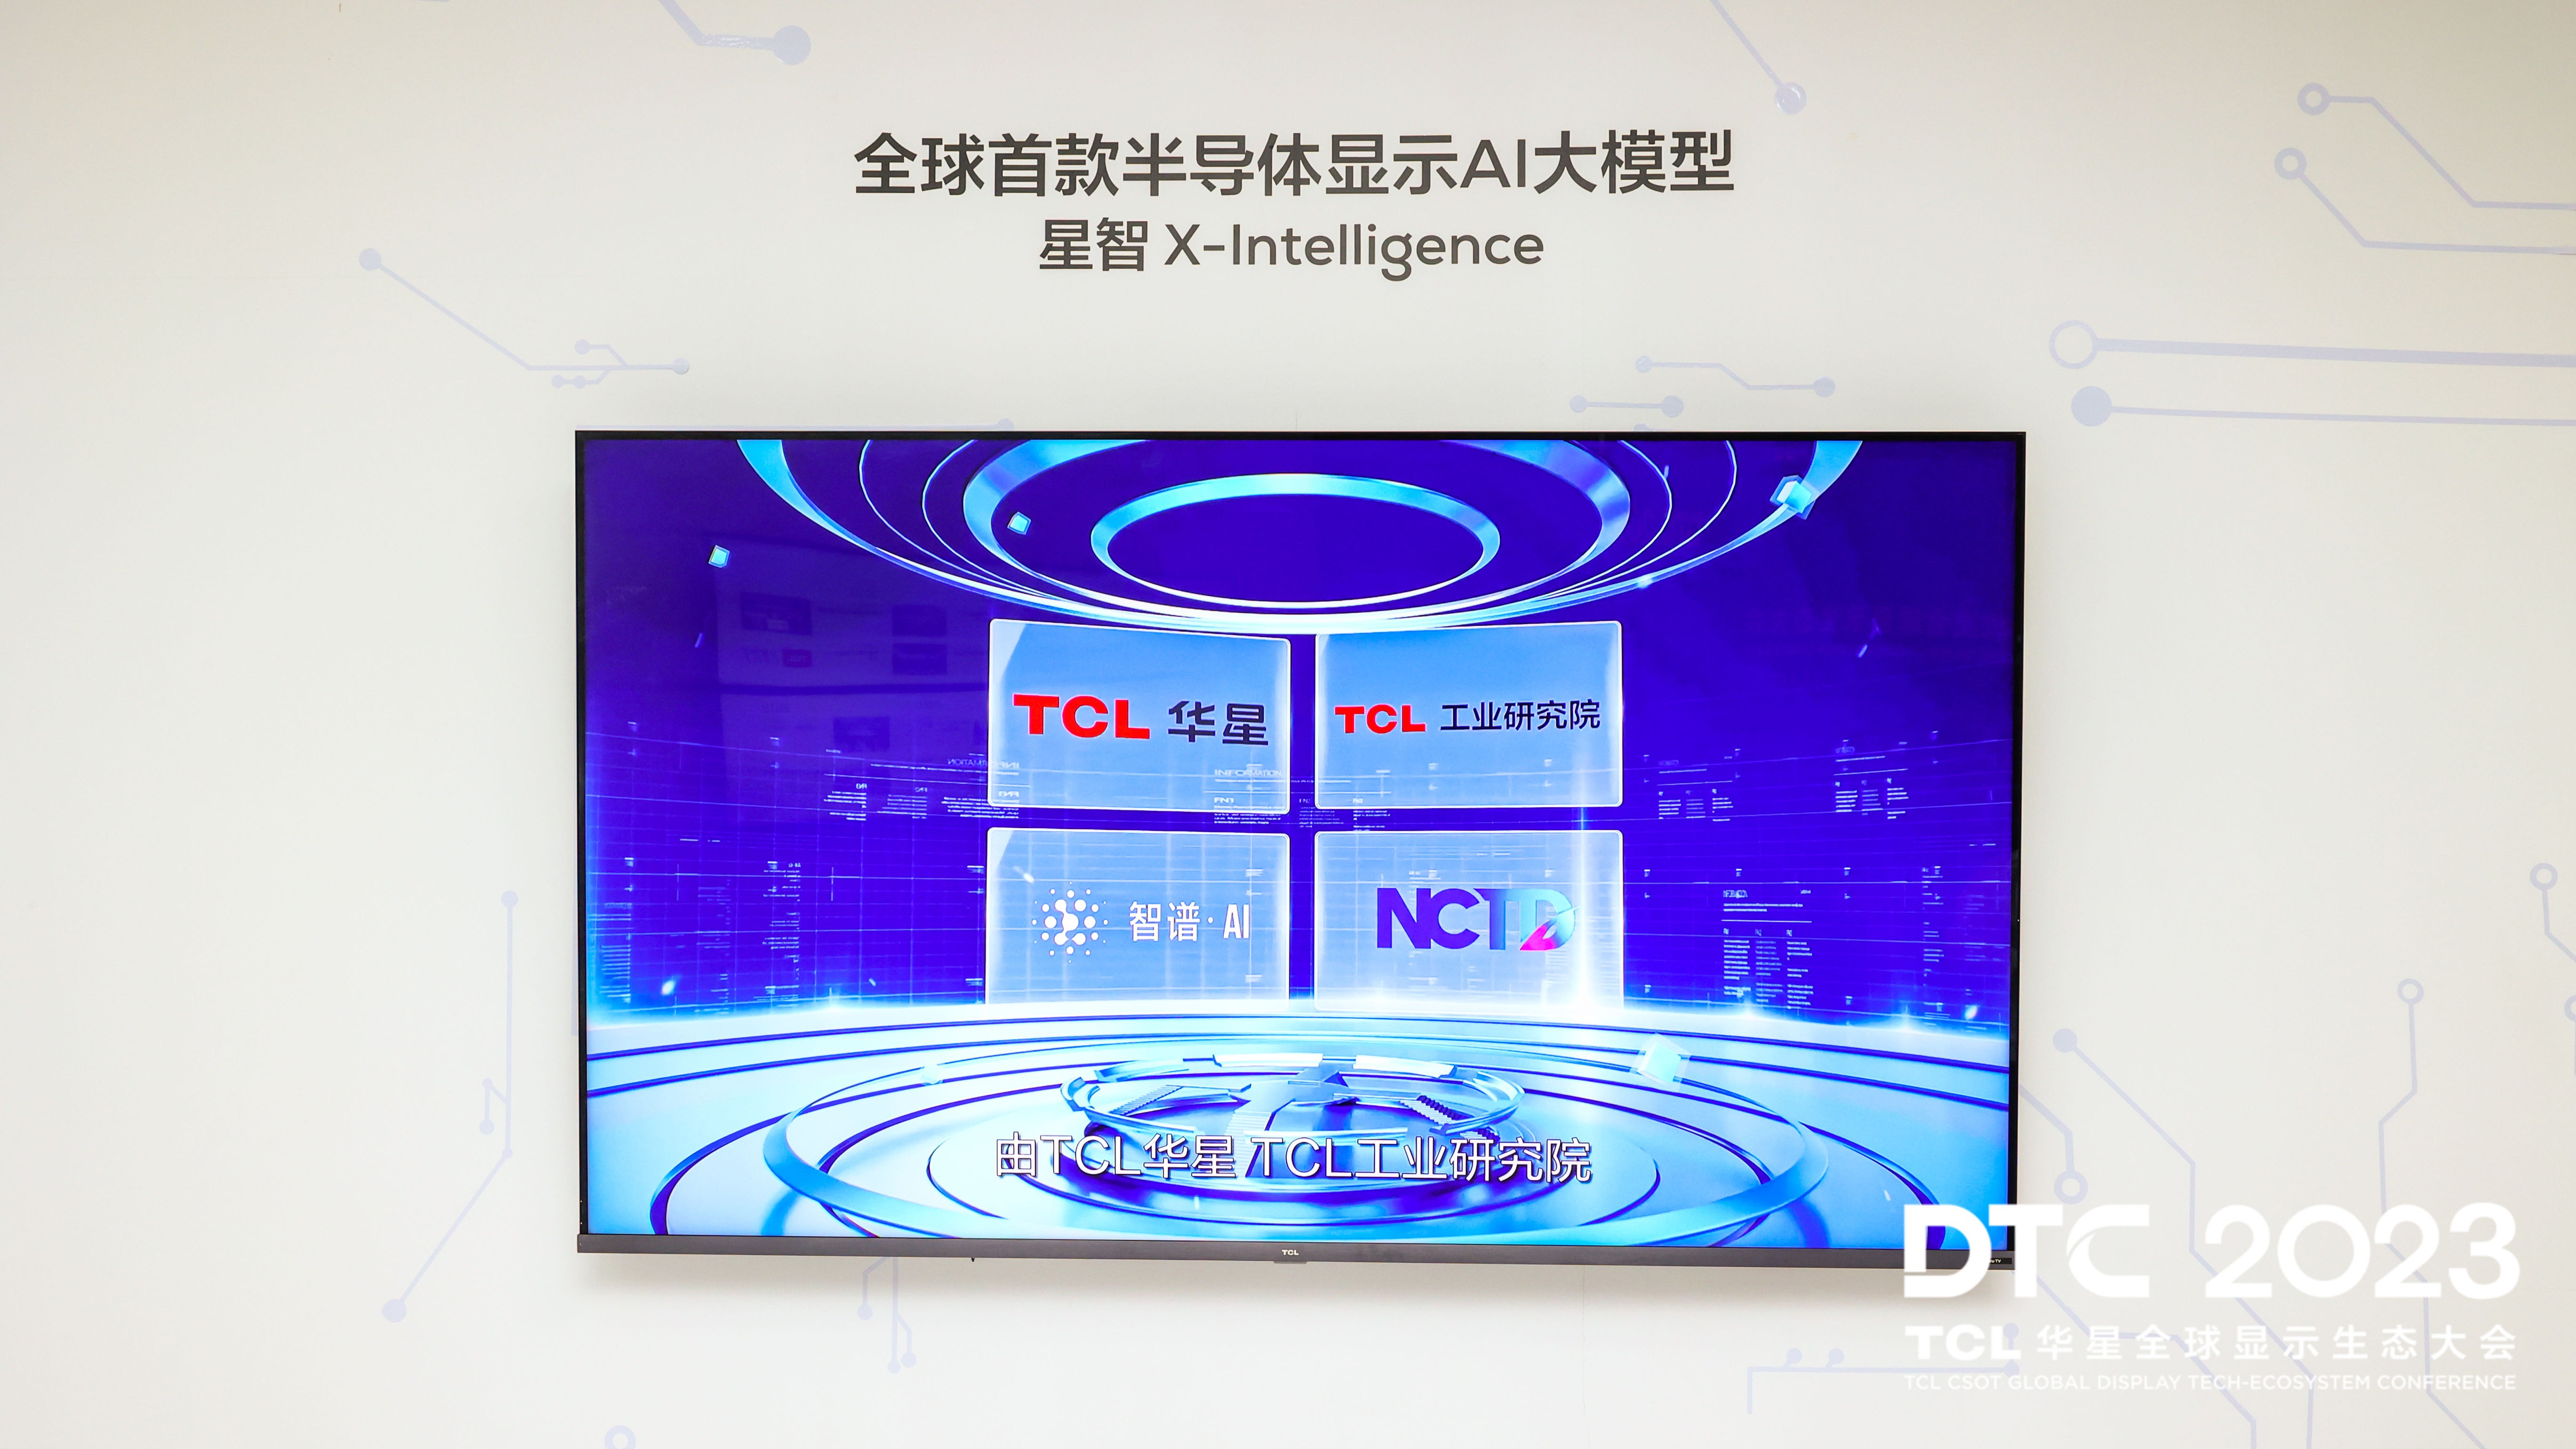 DTC 2023｜智慧屏显生态日臻完善，TCL华星大力推动显示产业升级